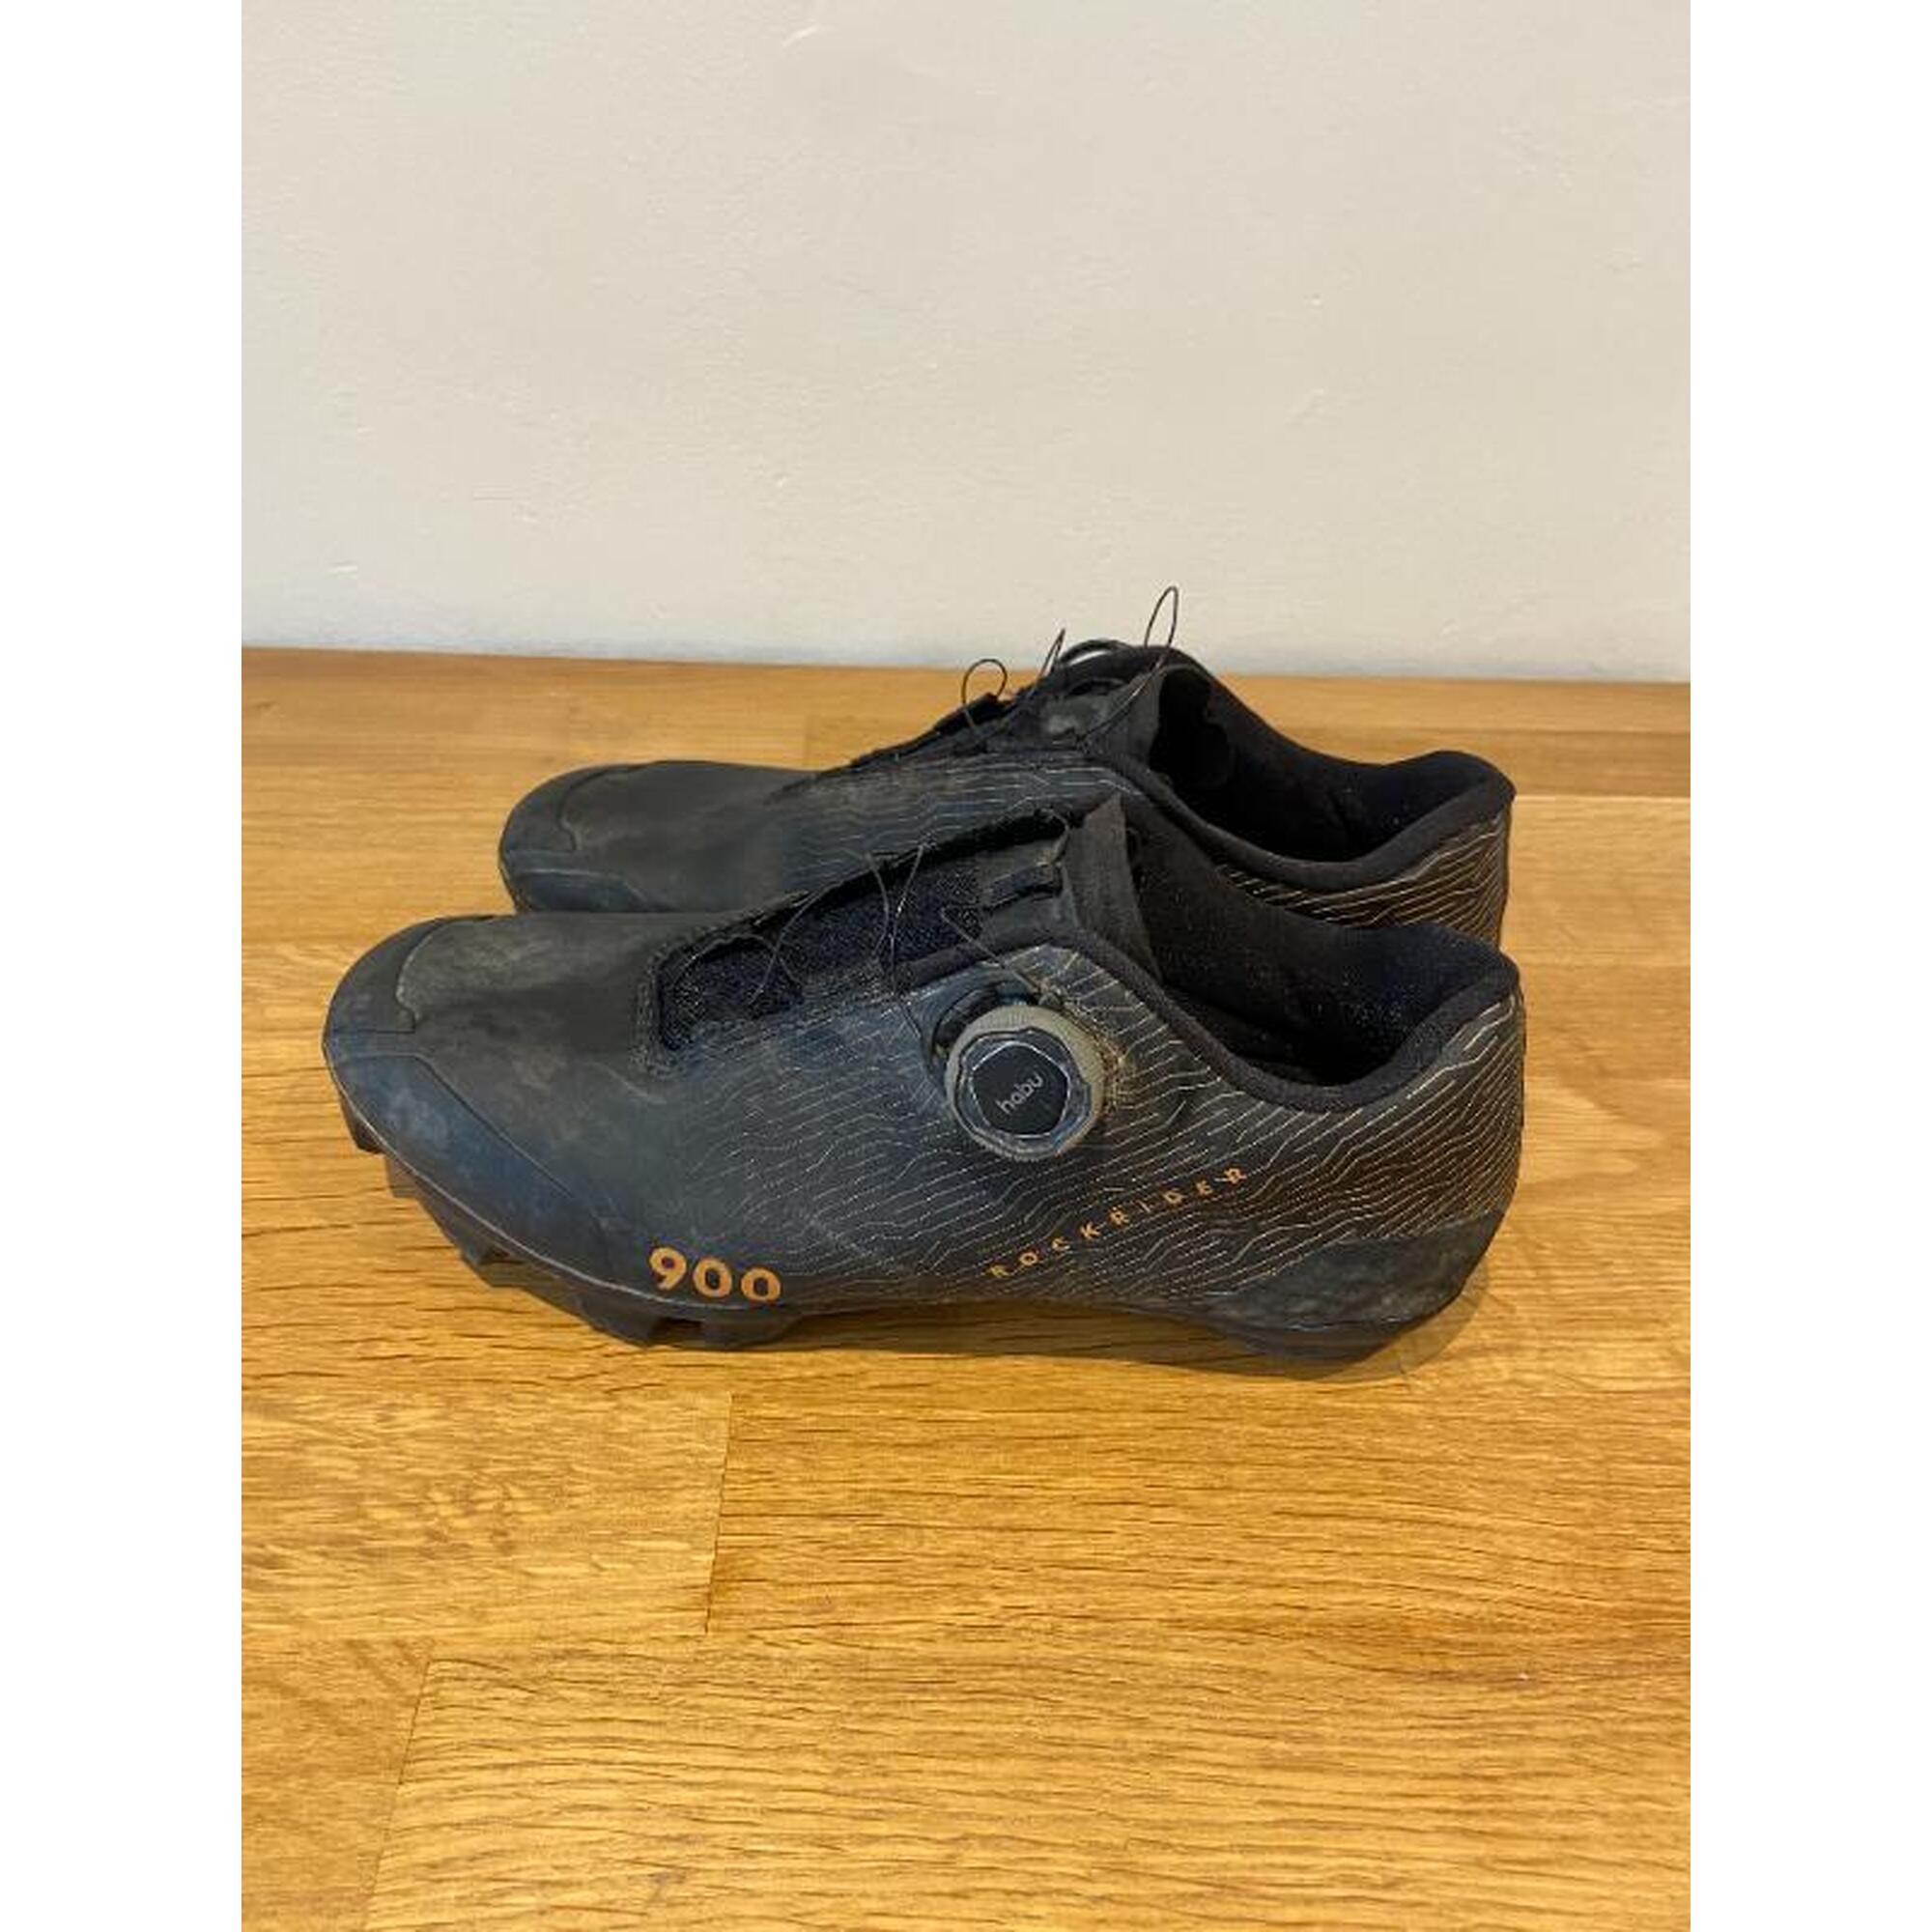 C2C - Rockrider Race 900 schoenen